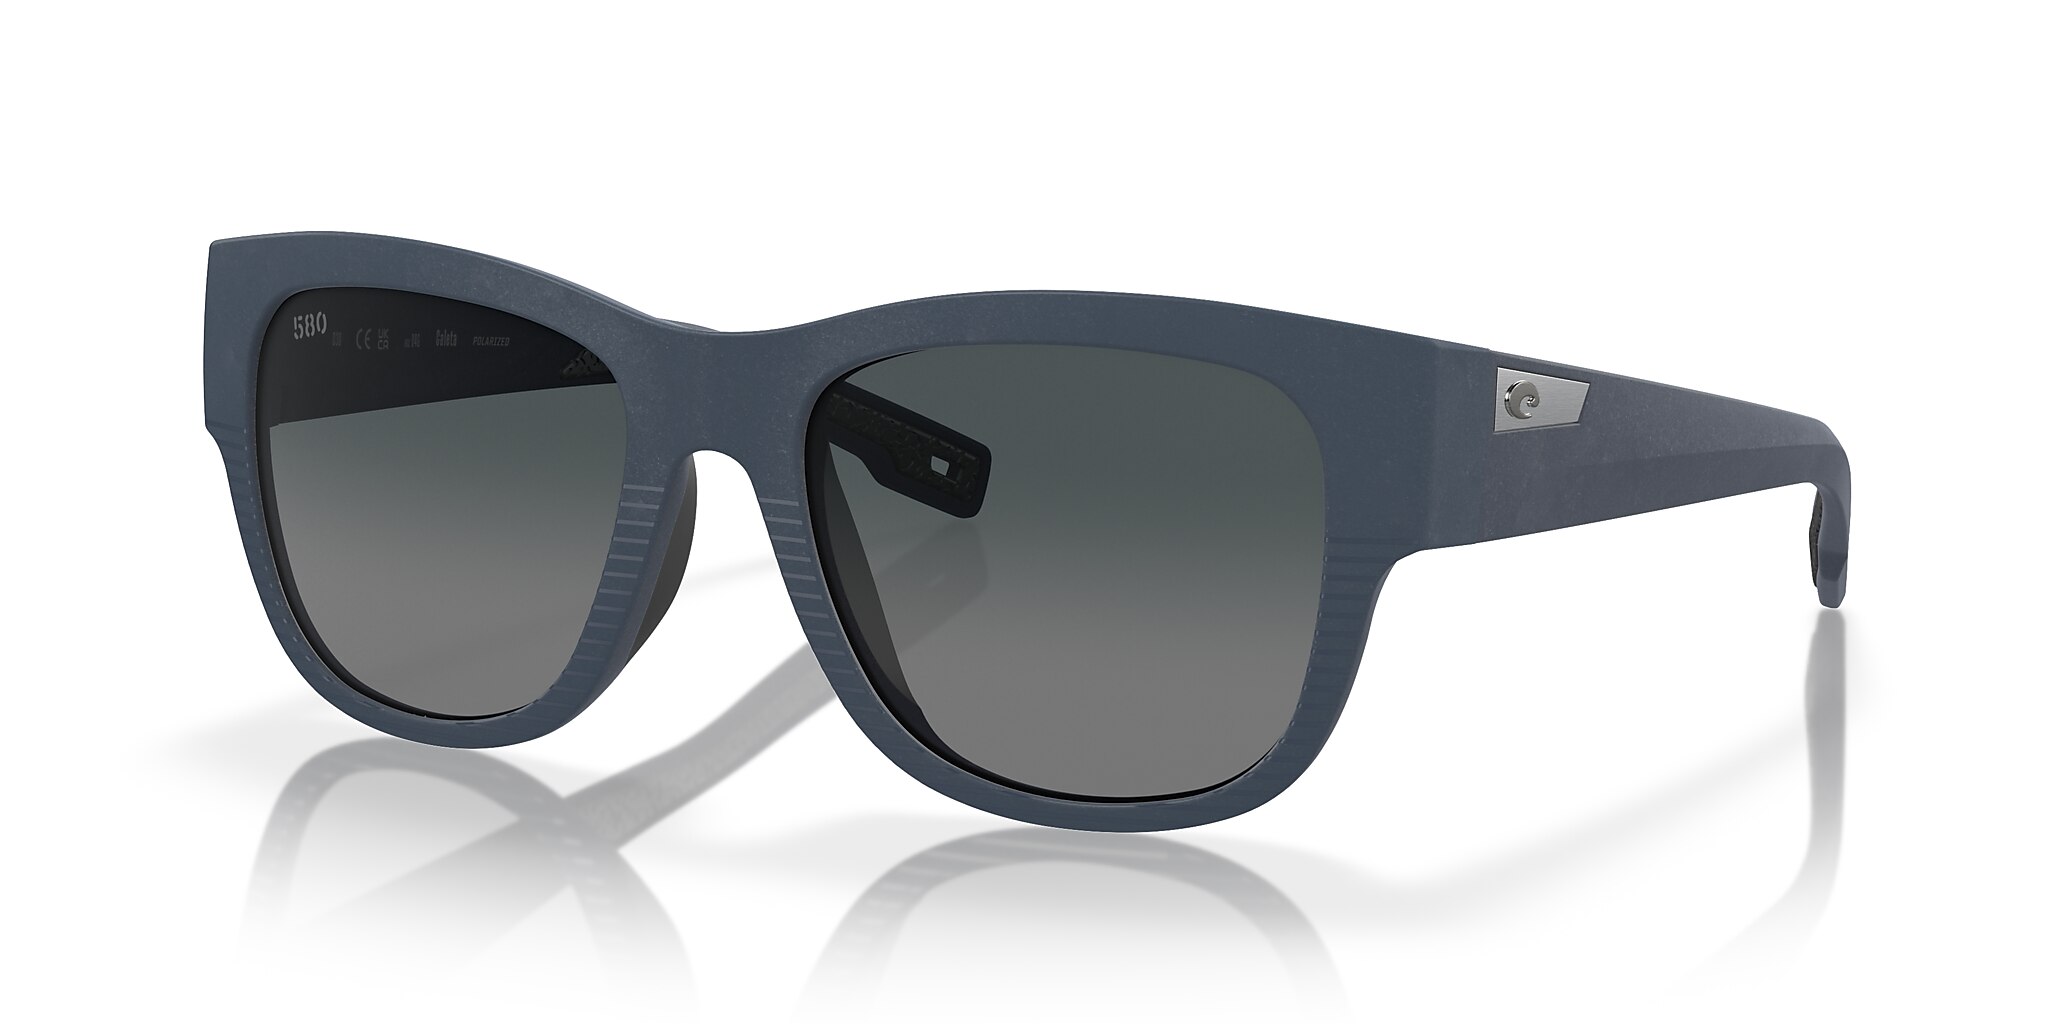 Caleta Polarized Sunglasses in Gray Gradient | Costa Del Mar®